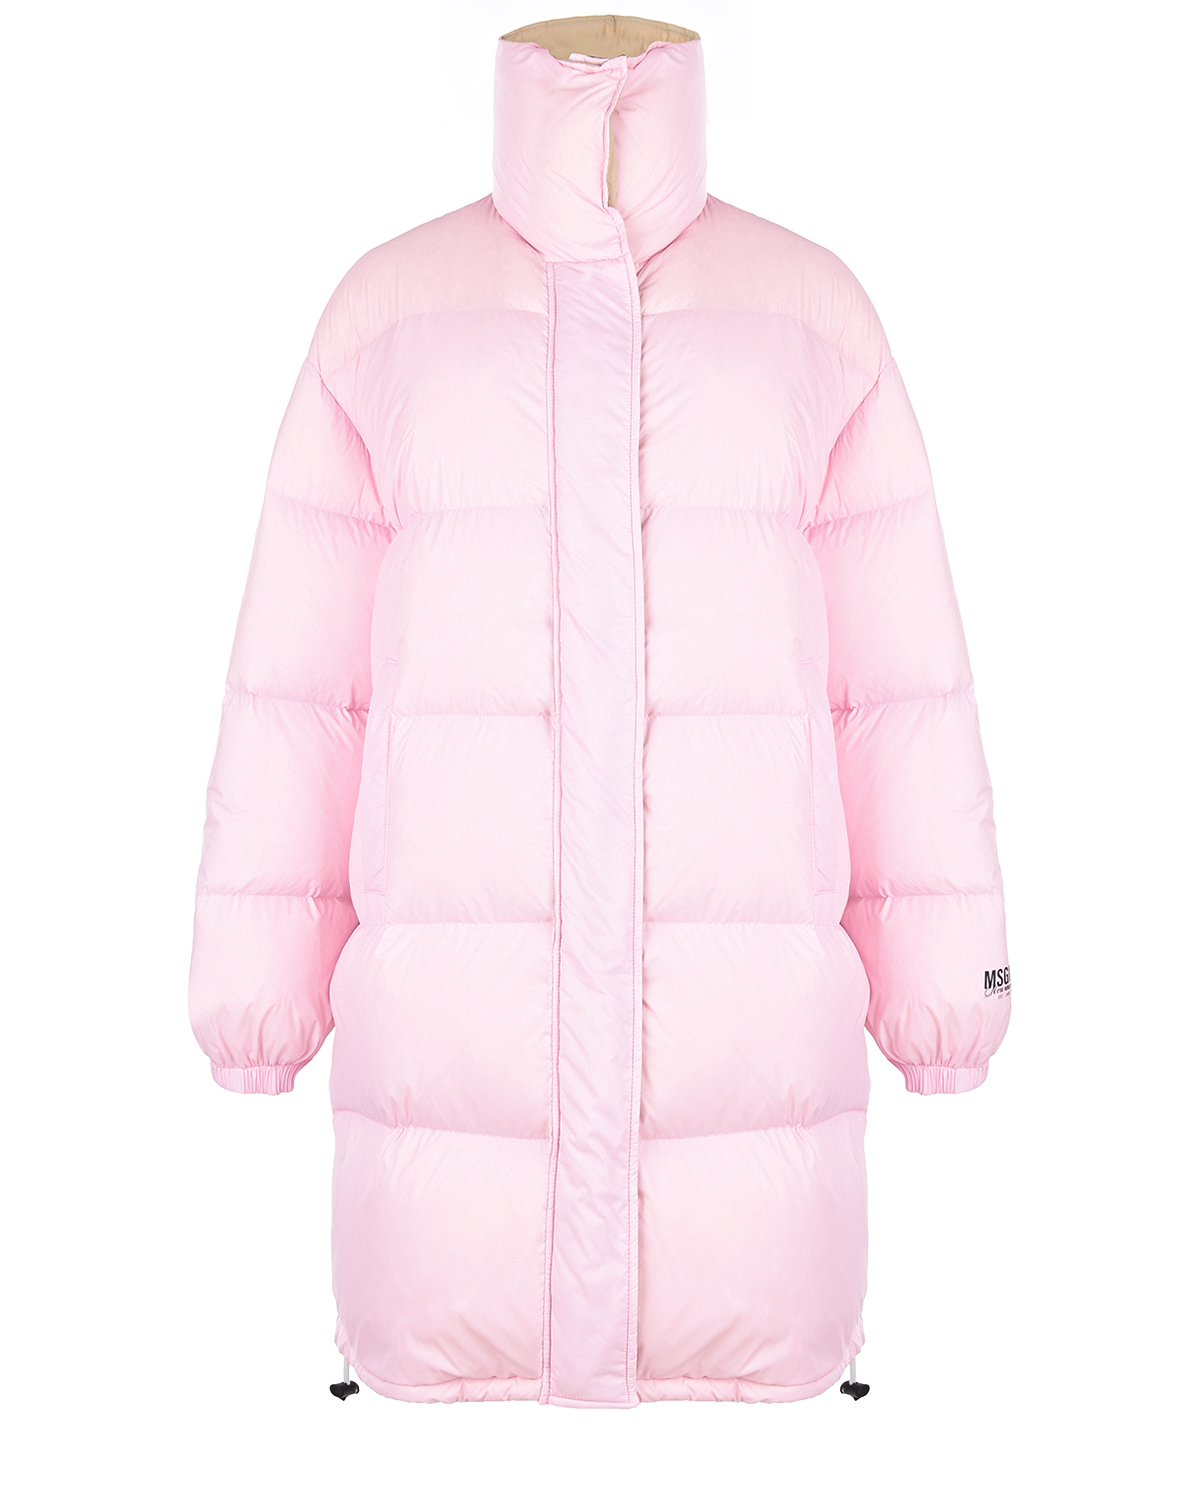 Удлиненная розовая куртка-пуховик MSGM, размер 44, цвет розовый